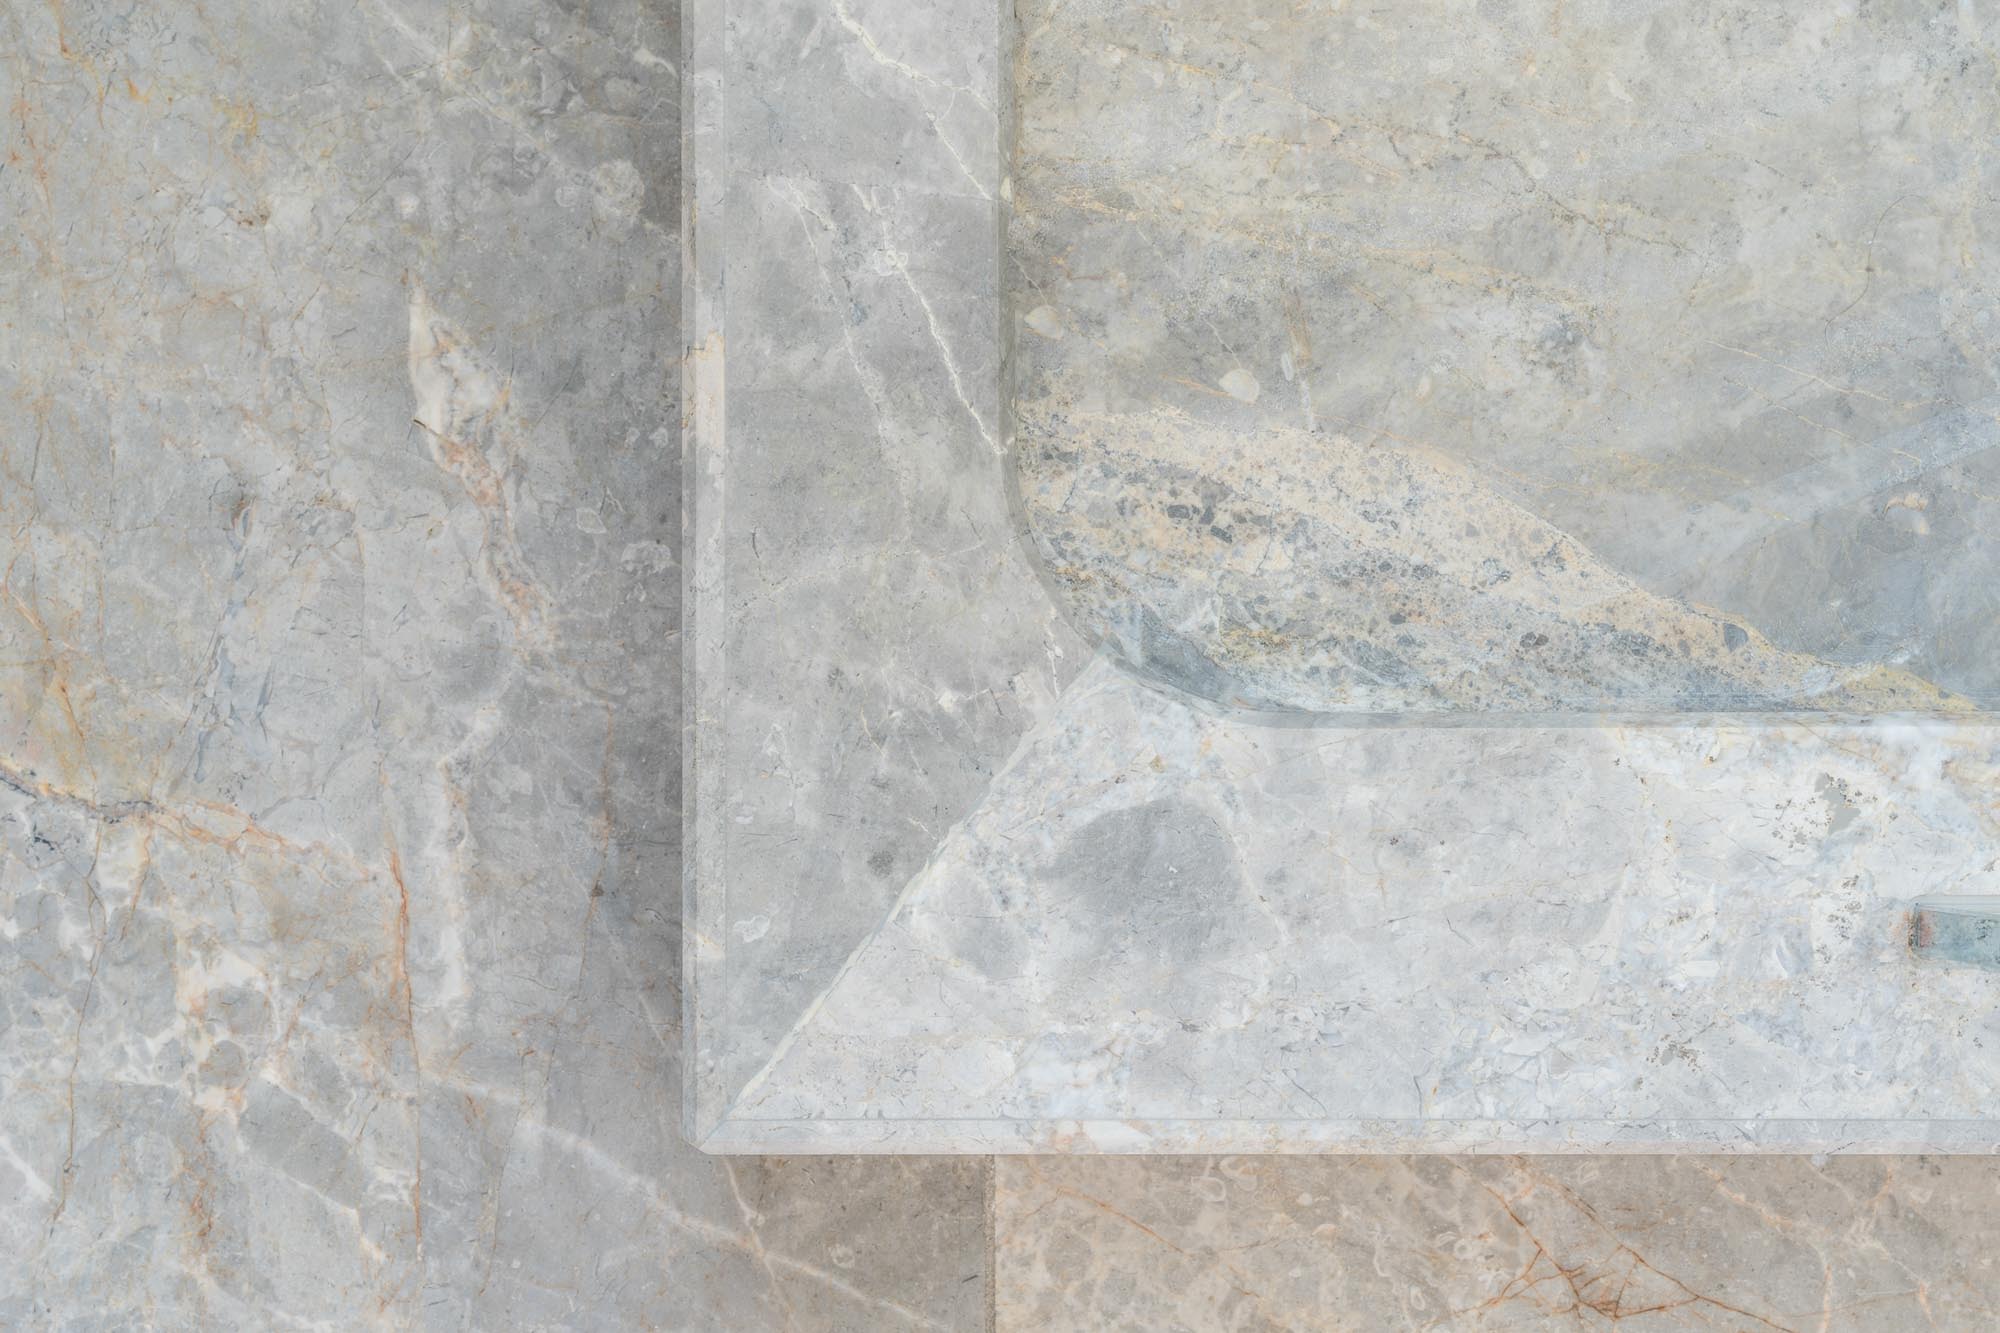 Fior_di_bosco-douche-marbre-Anthony_Cognaux-The_Mineralist-DesignStone